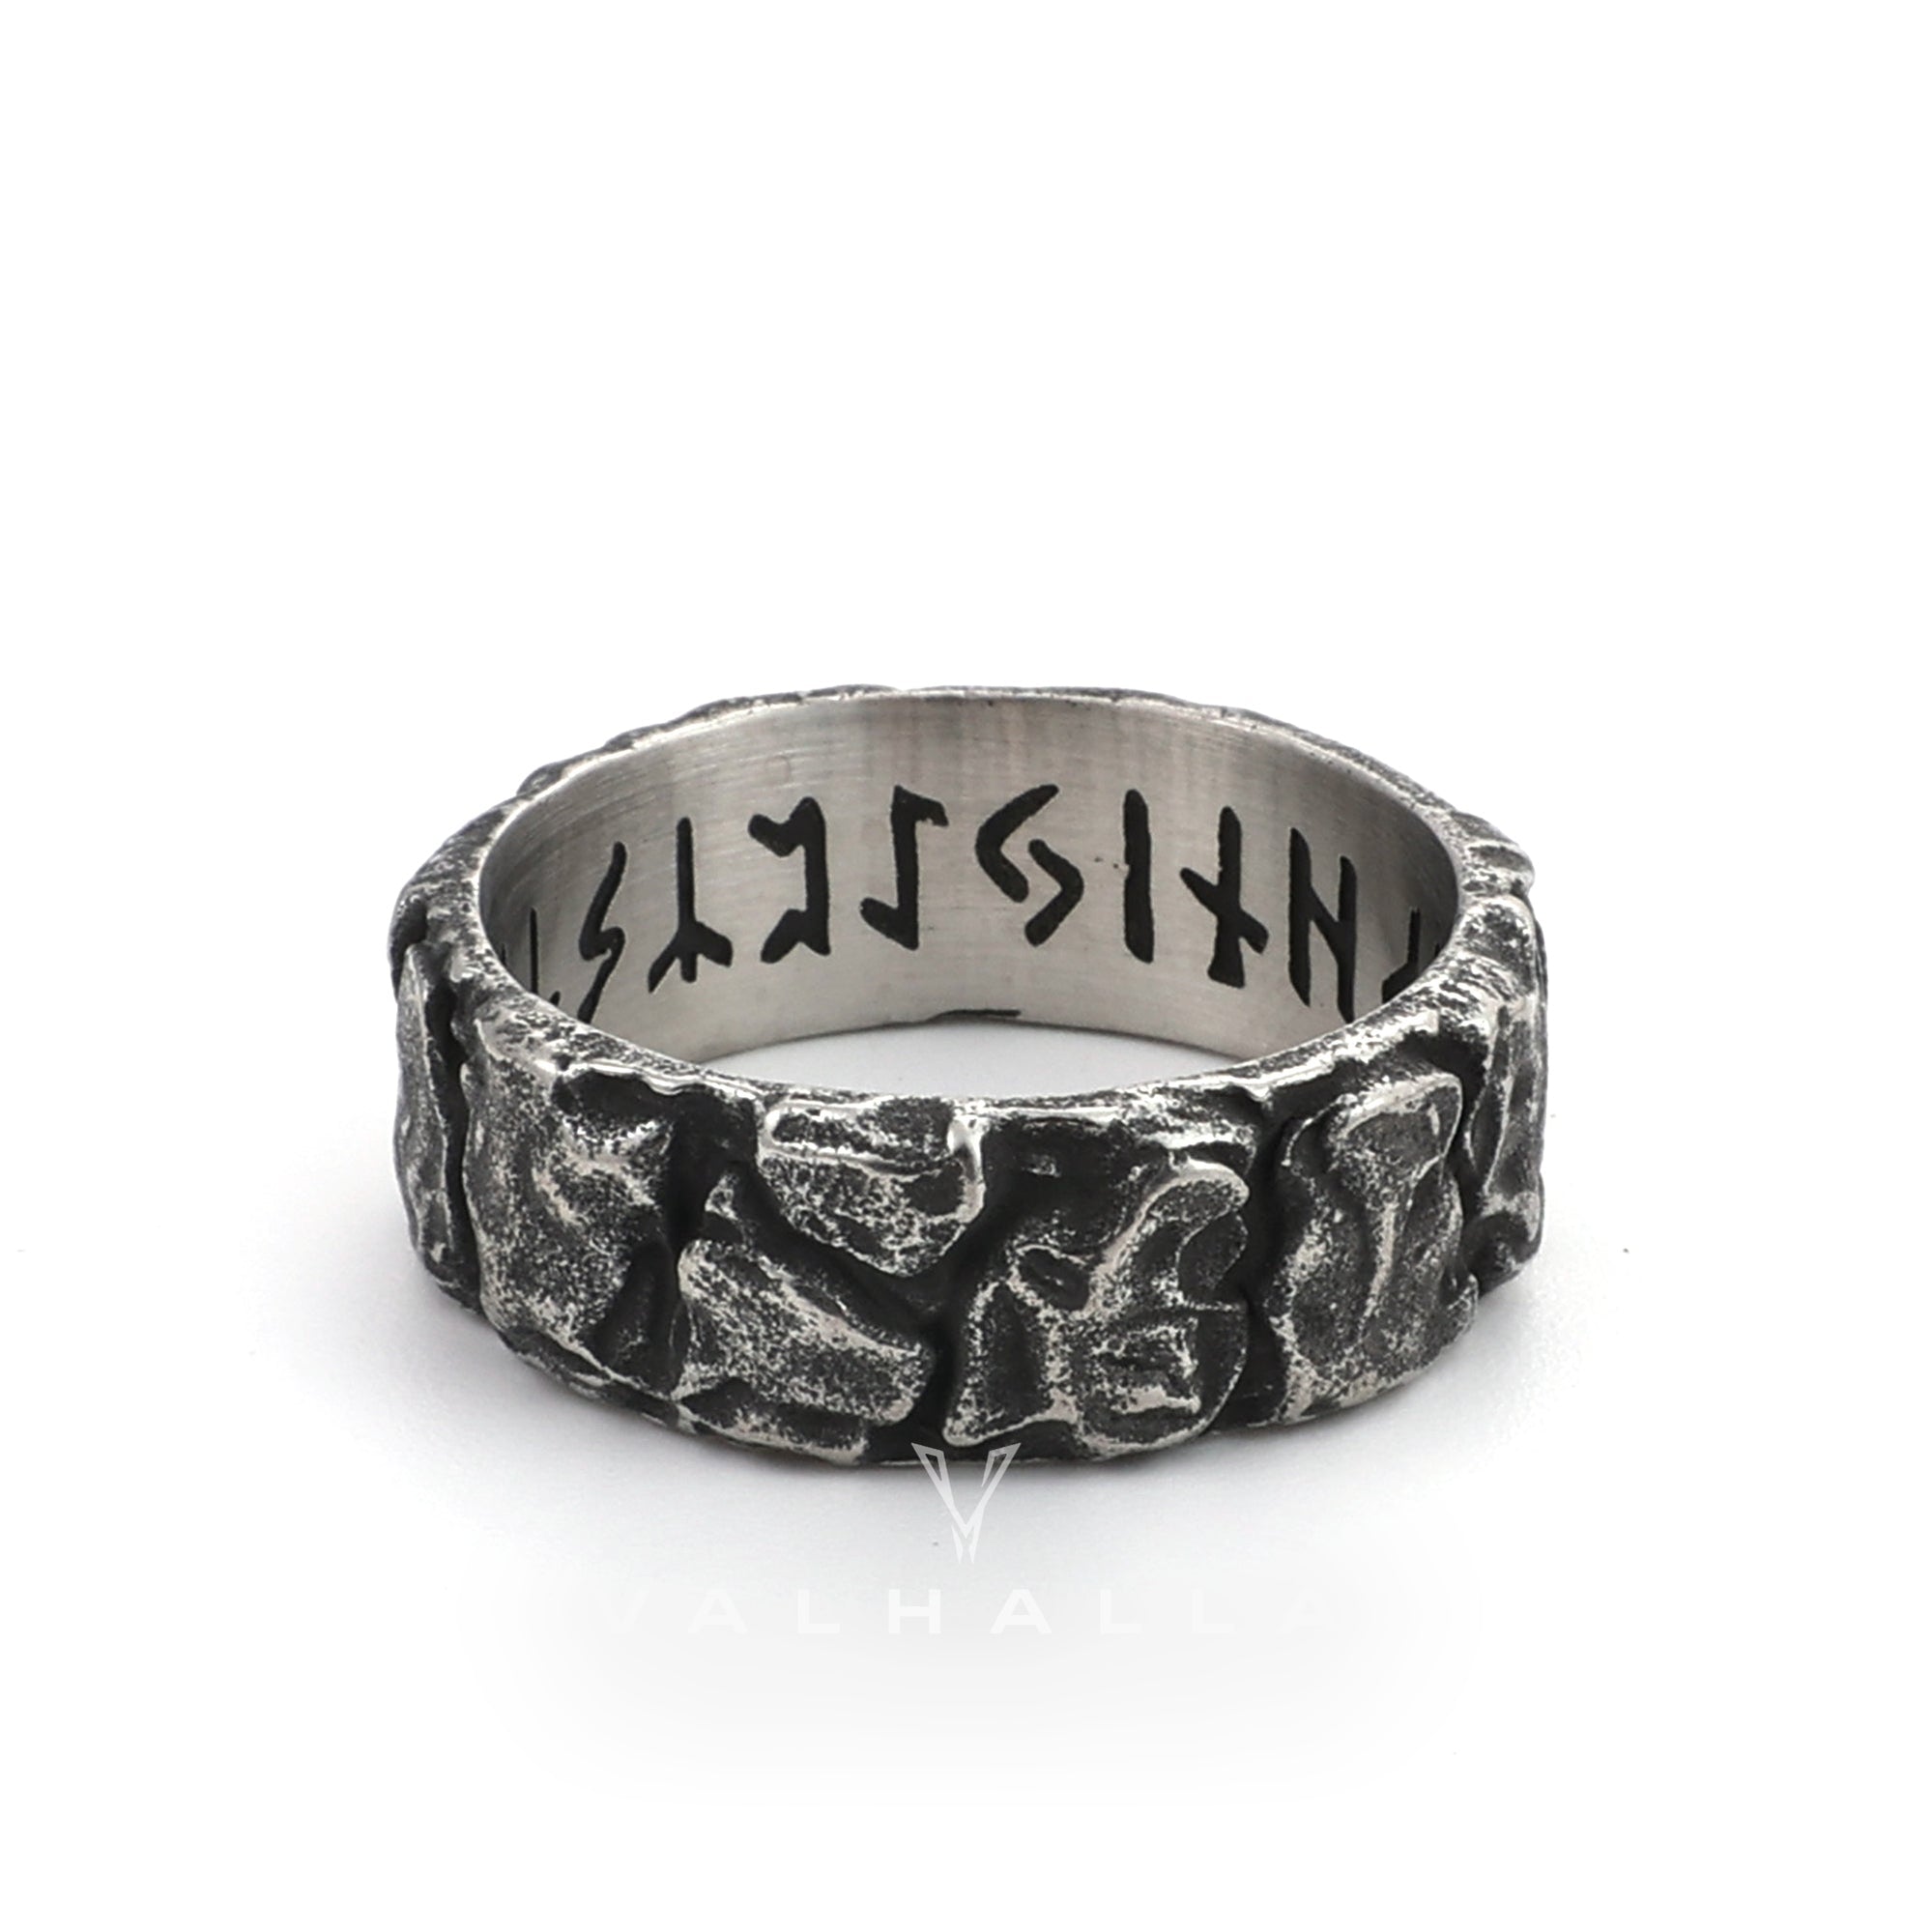 Stone Runes Stainless Steel Viking Ring